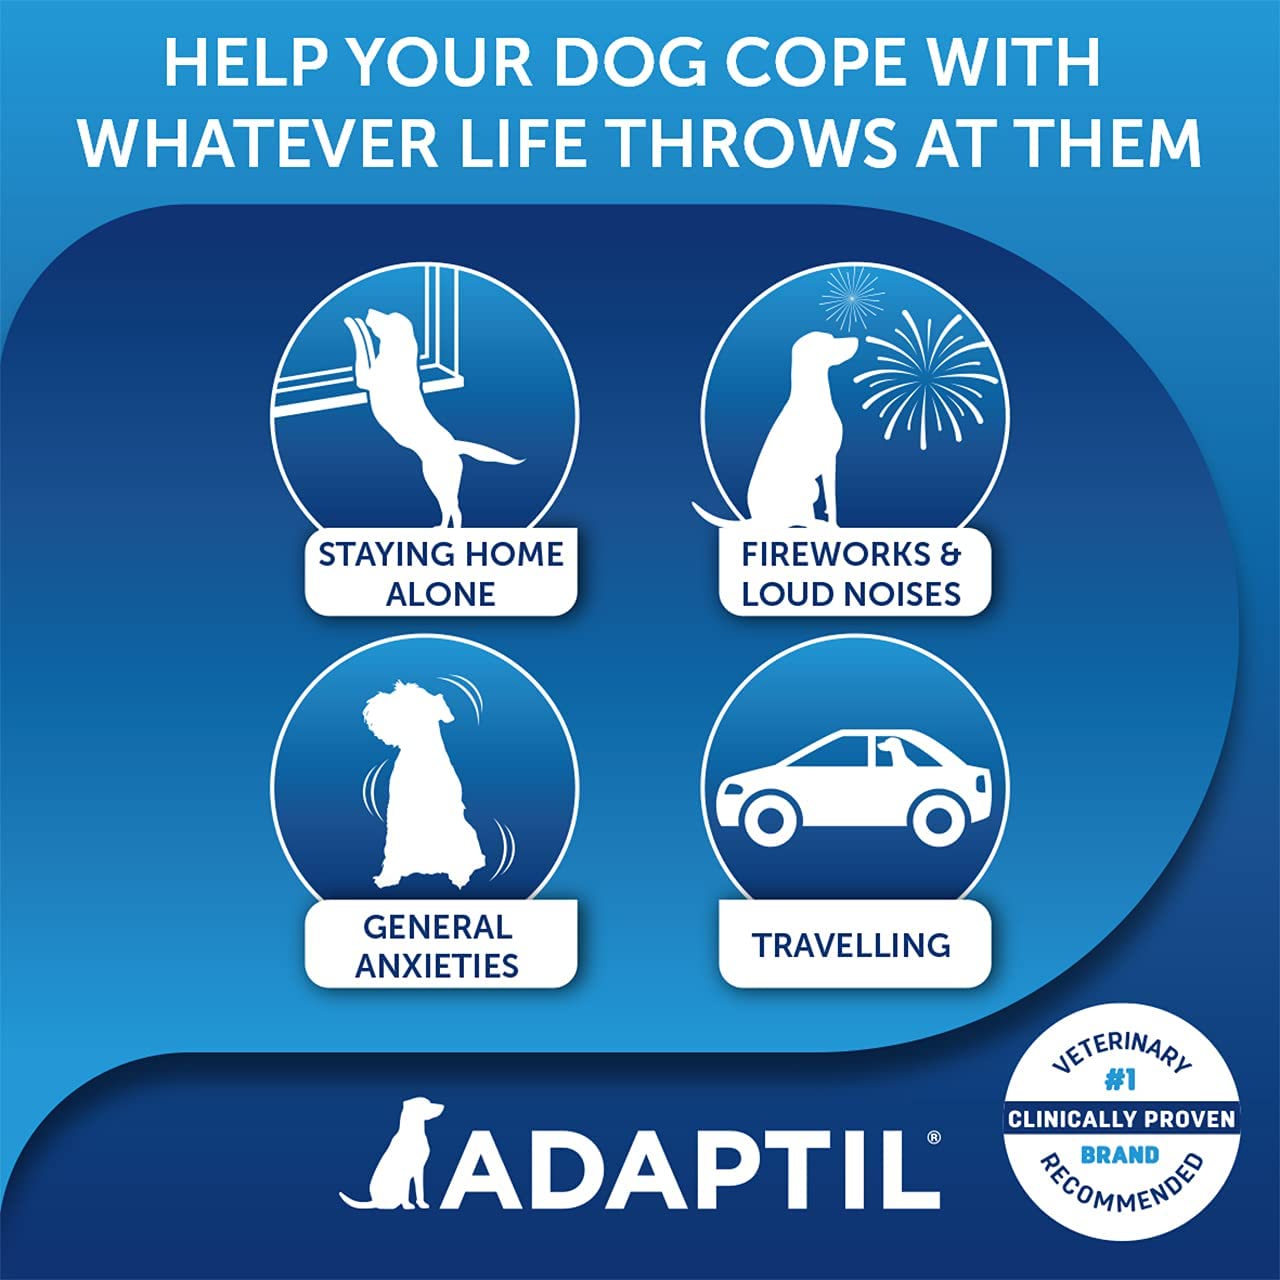 ADAPTIL - Spray para acalmar os cachorros em viagens